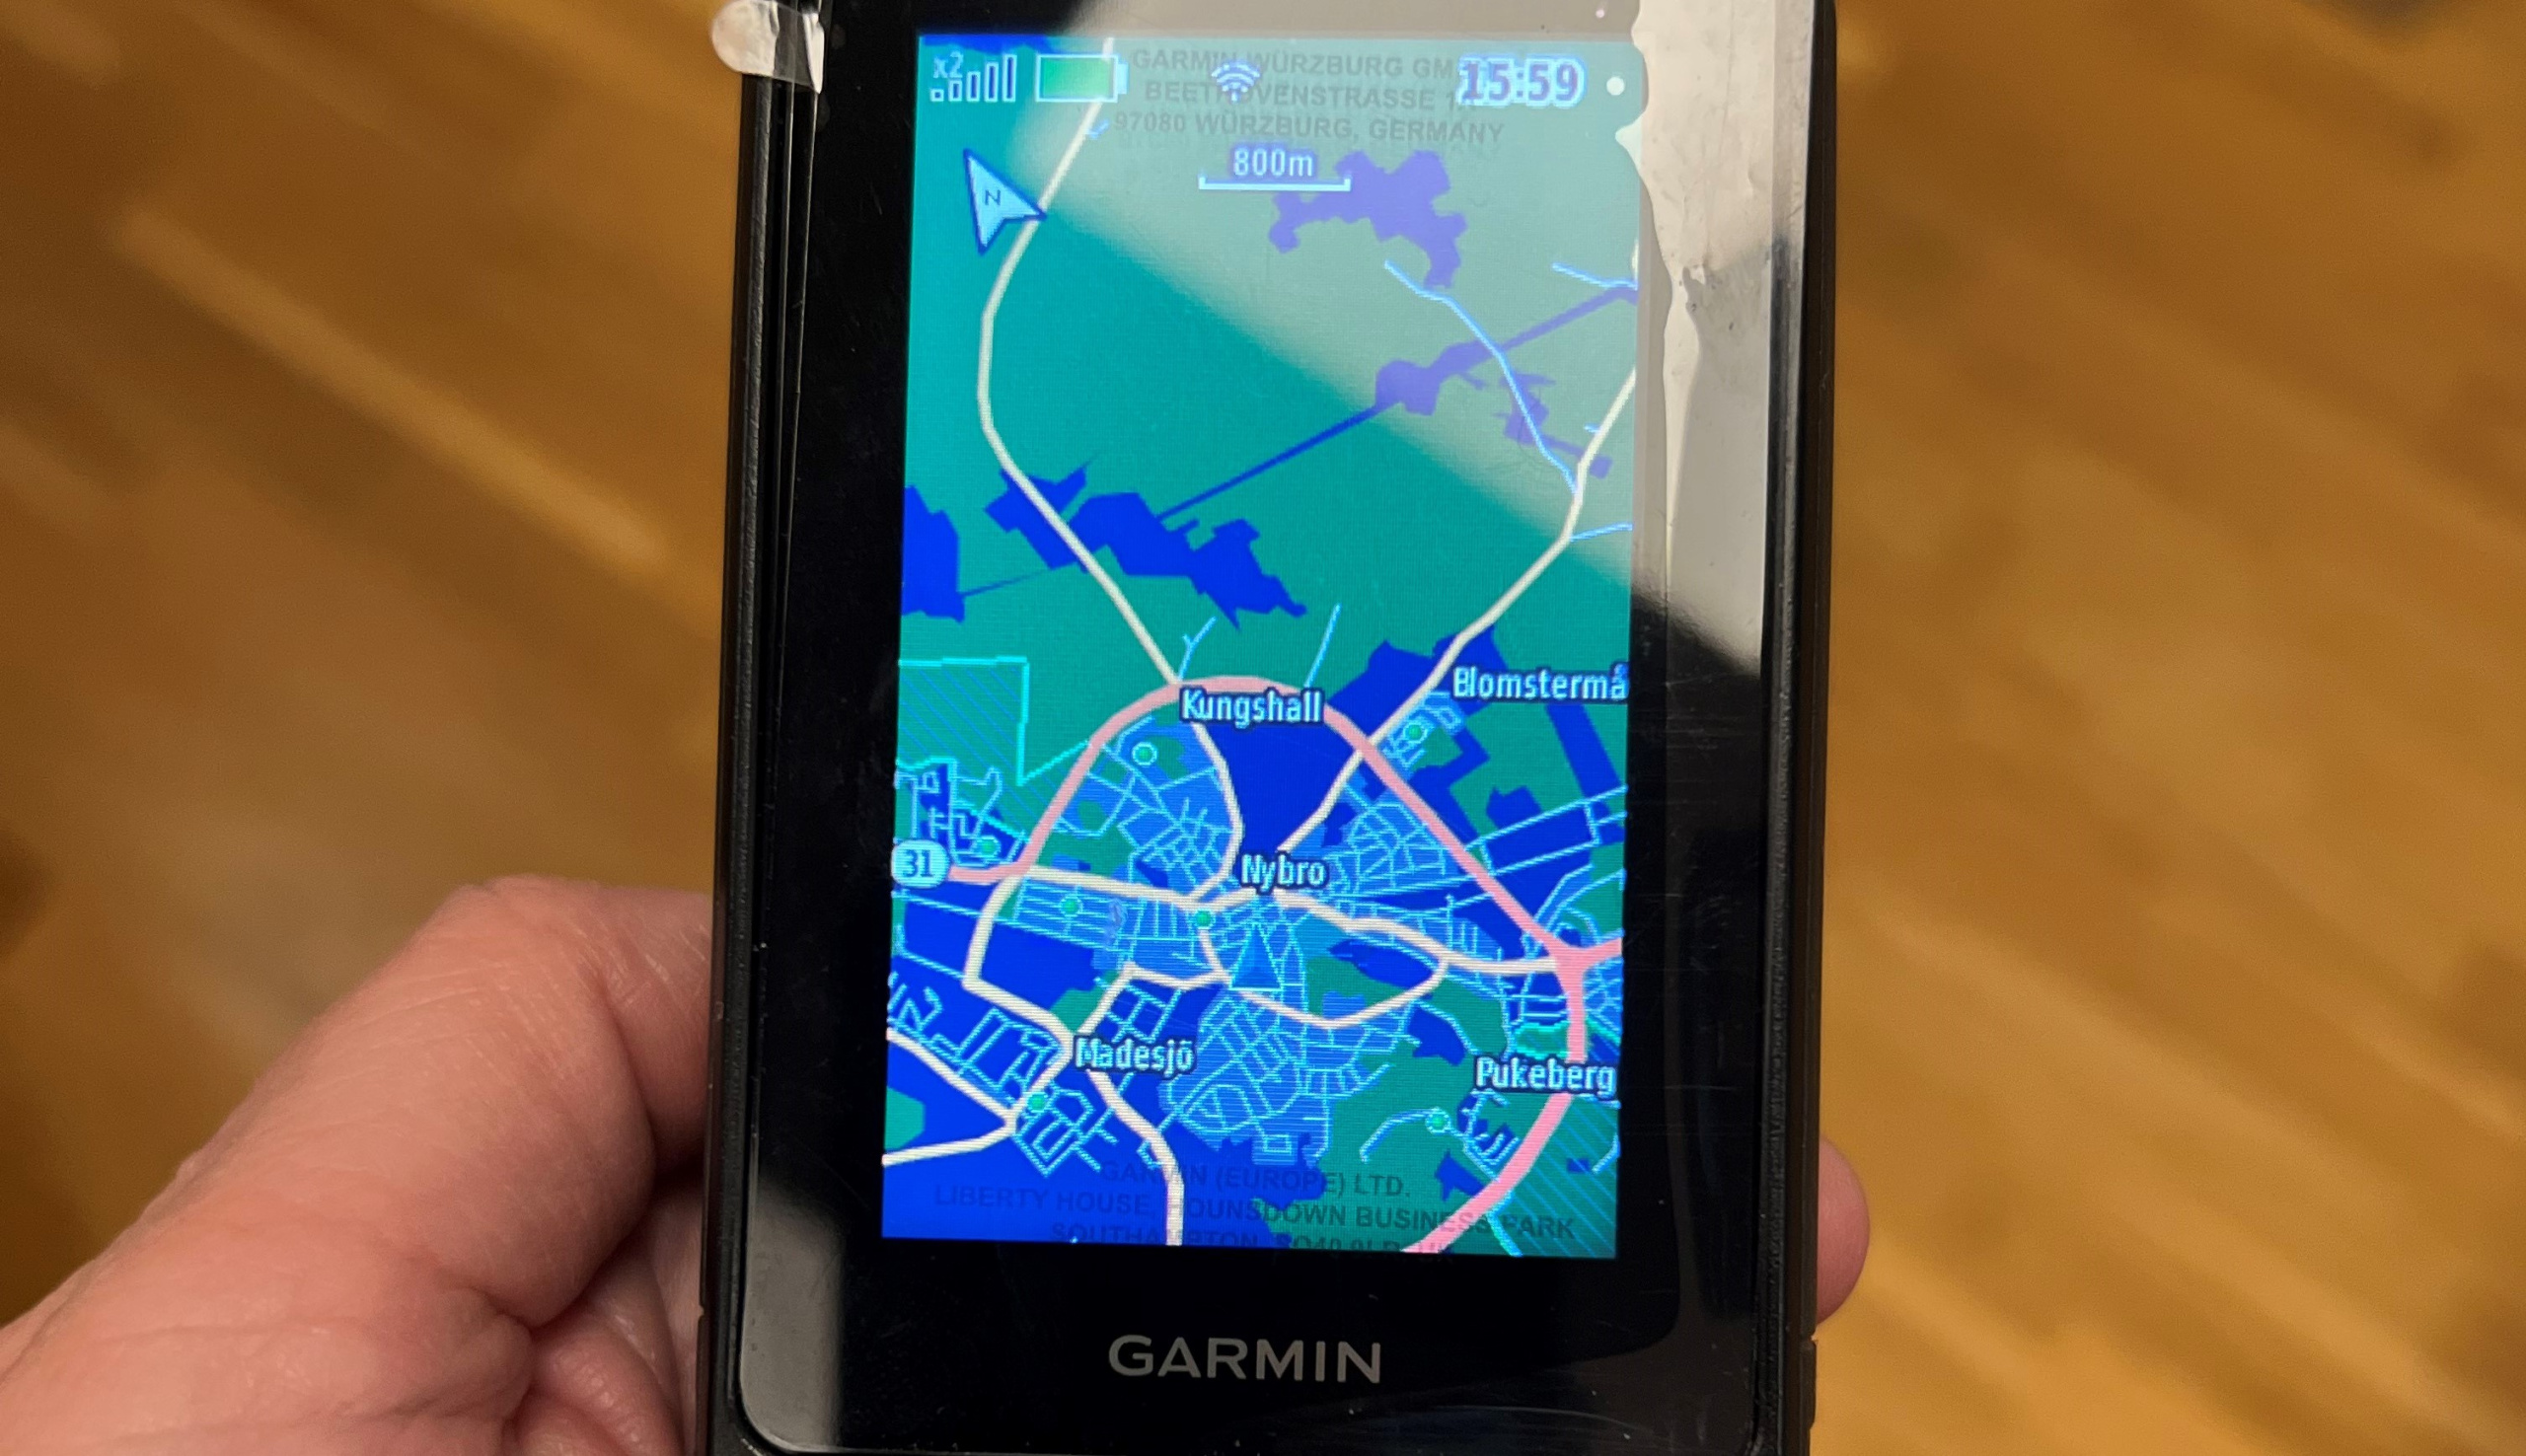 Närbild på en handhållen Garmin GPS som visar en karta över centrala Nybro.